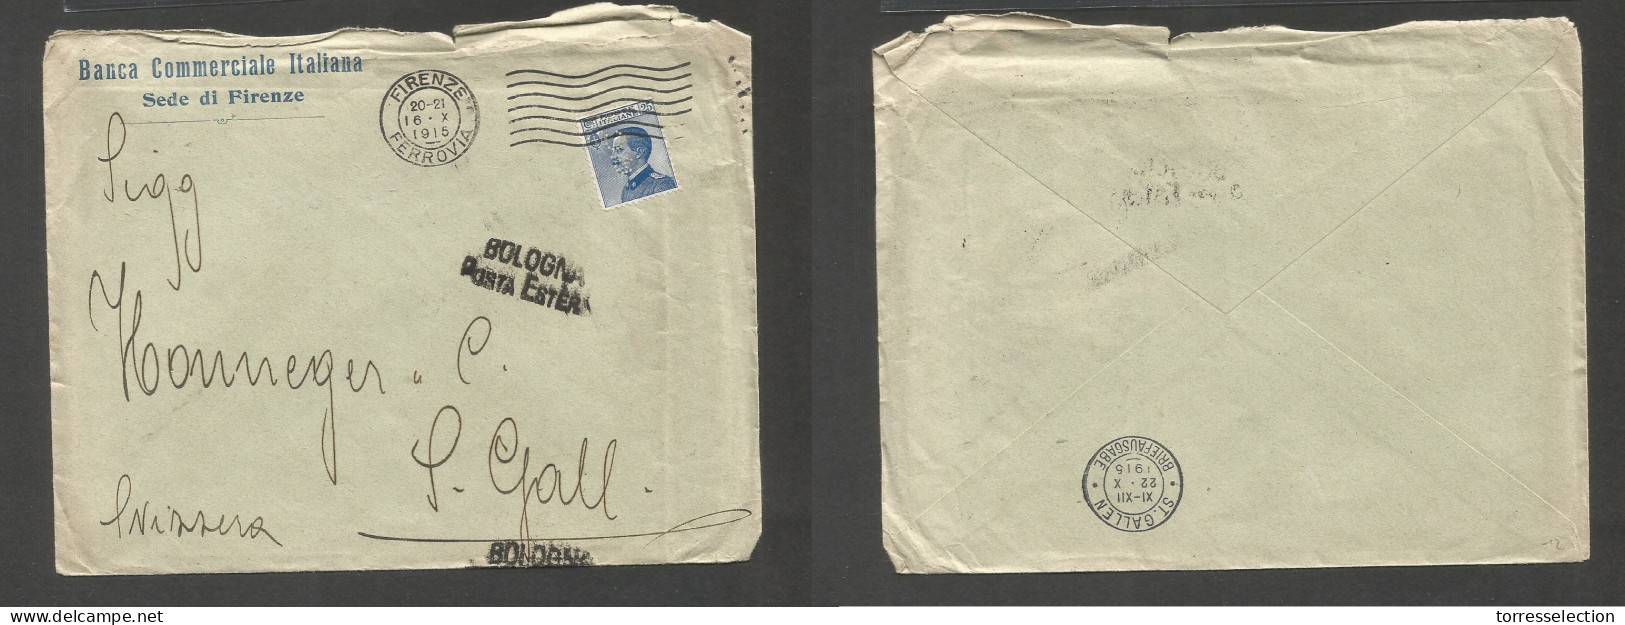 Italy - XX. 1915 (16 Oct) Perfin. BCI. Firenze - Switzerland, St. Gallen (22 Oct) Single Fkd Envelope. SALE. - Ohne Zuordnung